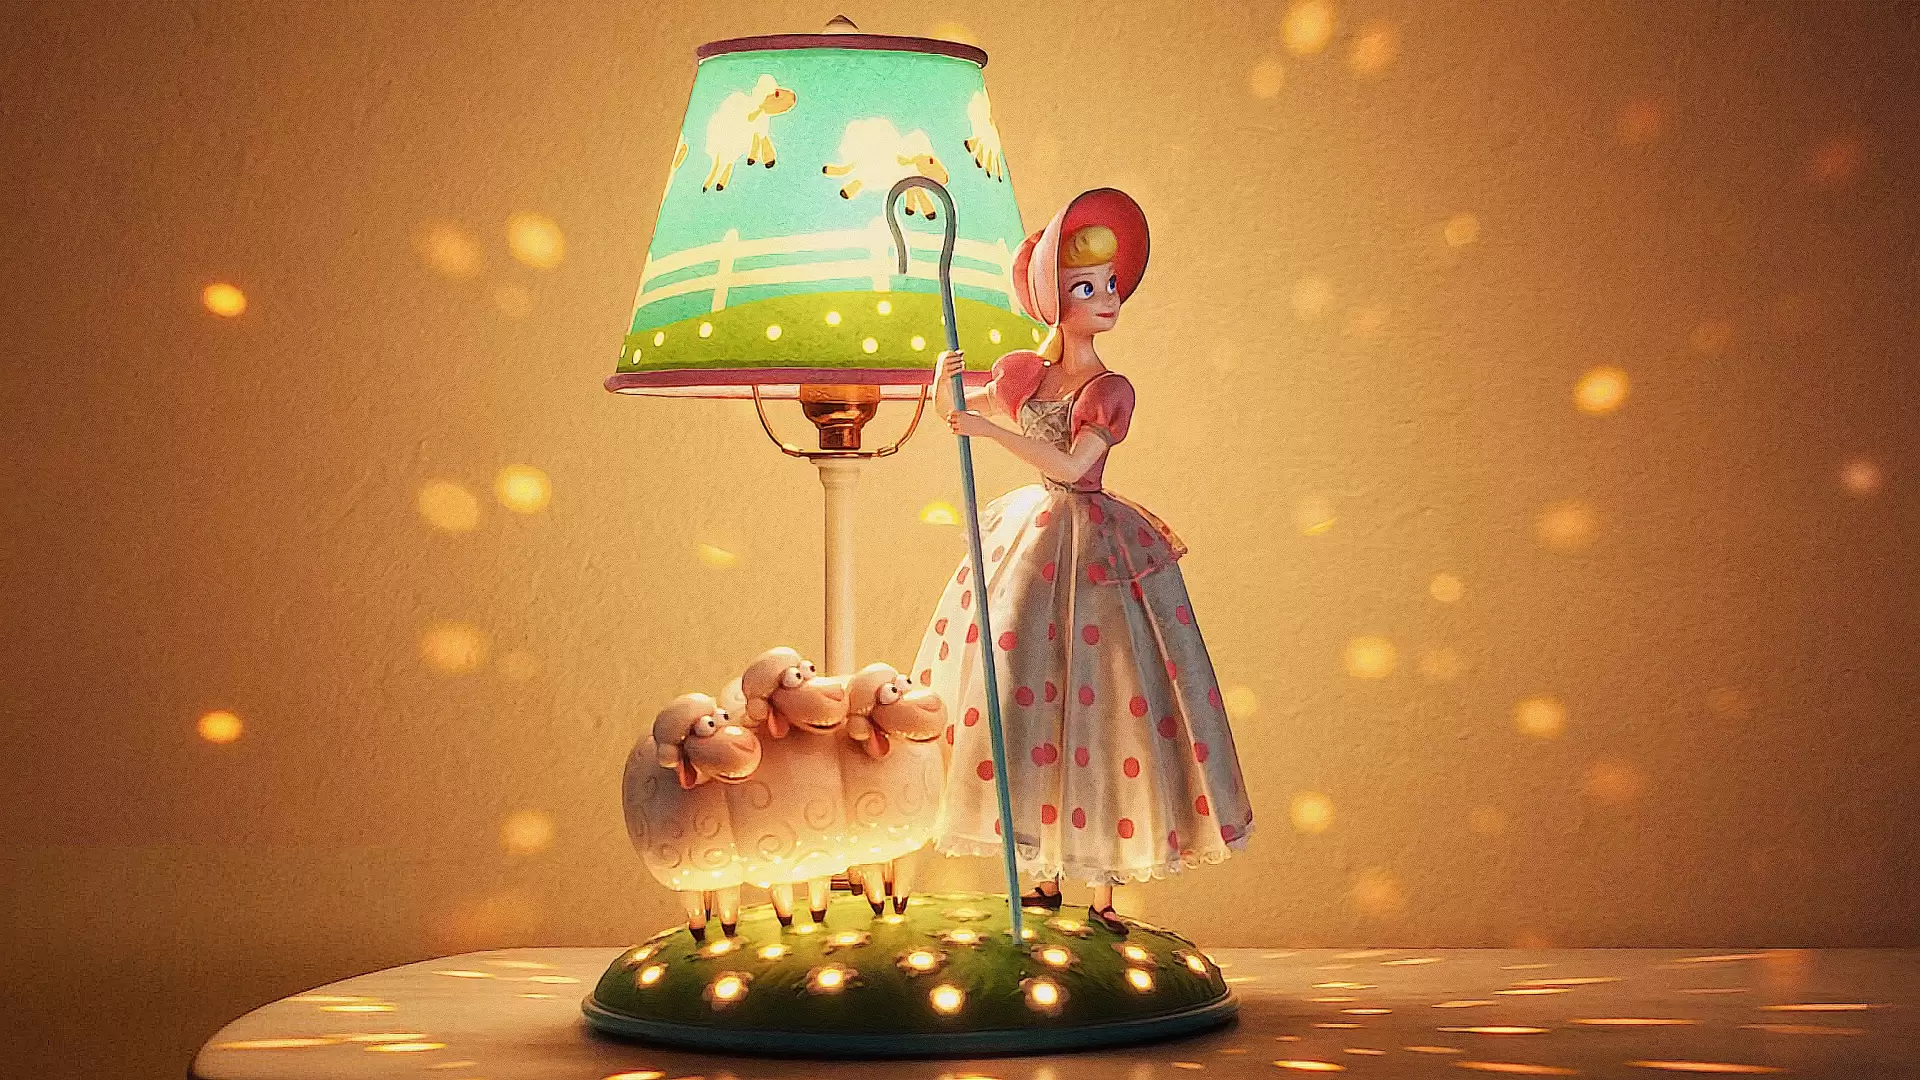 دانلود انیمیشن Lamp Life 2020 با زیرنویس فارسی